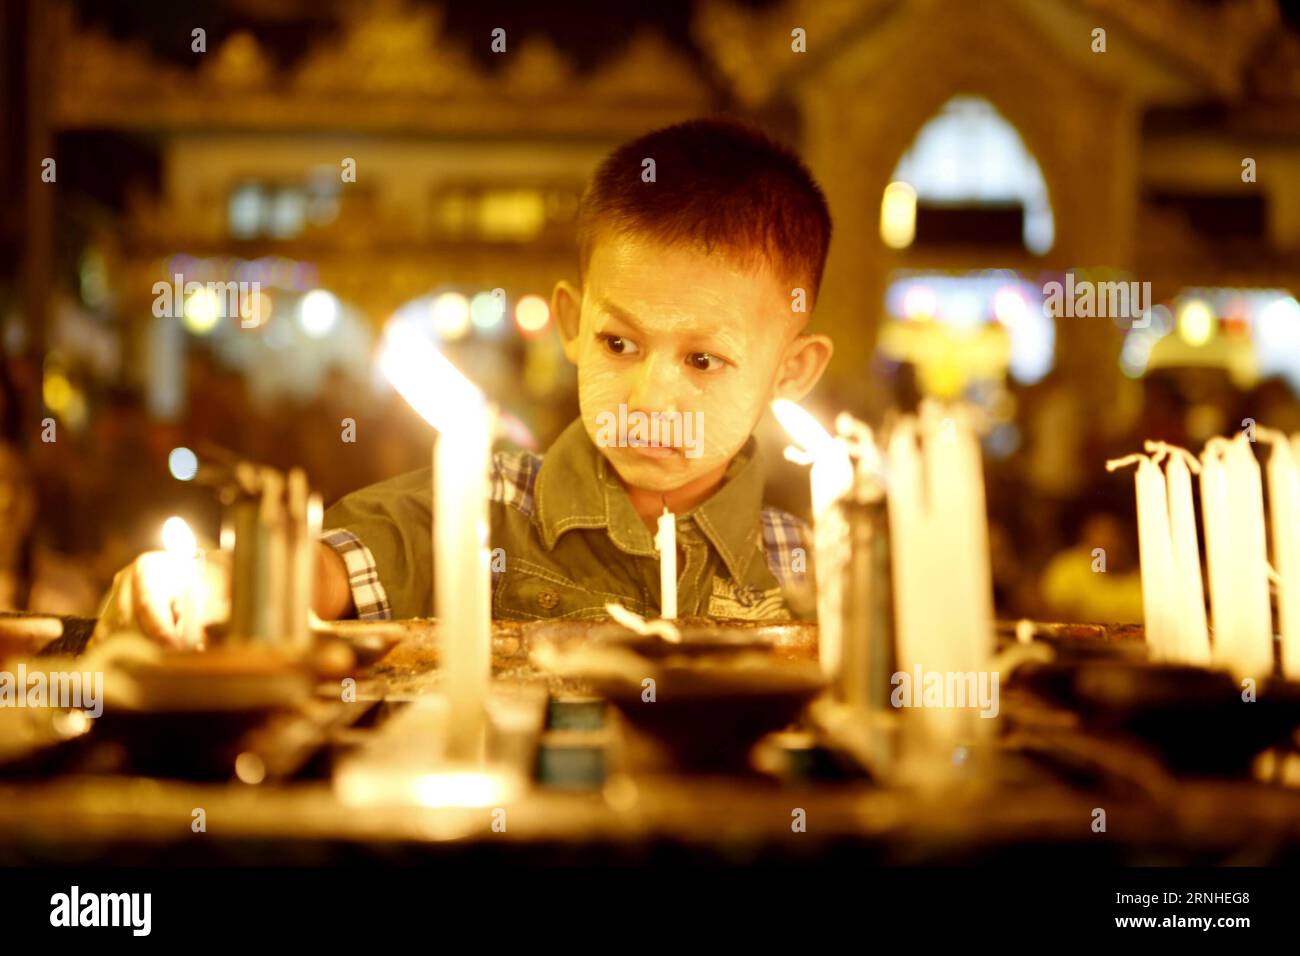 Bilder des Tages Ein Junge zündet Kerzen auf Myanmars traditionellem Tazaungdaing-Festival in der Shwedagon-Pagode in Yangon, Myanmar, 13. November 2016 an. Das Tazaungdaing Festival, auch bekannt als das Festival der Lichter, das im achten Monat des traditionellen myanmarischen Kalenders auf den Vollmondtag fällt, wird als Nationalfeiertag in Myanmar gefeiert und markiert das Ende der Regenzeit. ) (zw) MYANMAR-YANGON-TAZAUNGDAING FESTIVAL UxAung PUBLICATIONxNOTxINxCHN Images The Day A Boy Lights Candles on Myanmar S Traditional Tazaungdaing Festival in der Shwedagon Pagoda in Yangon Myanmar 13. November 2016 Stockfoto